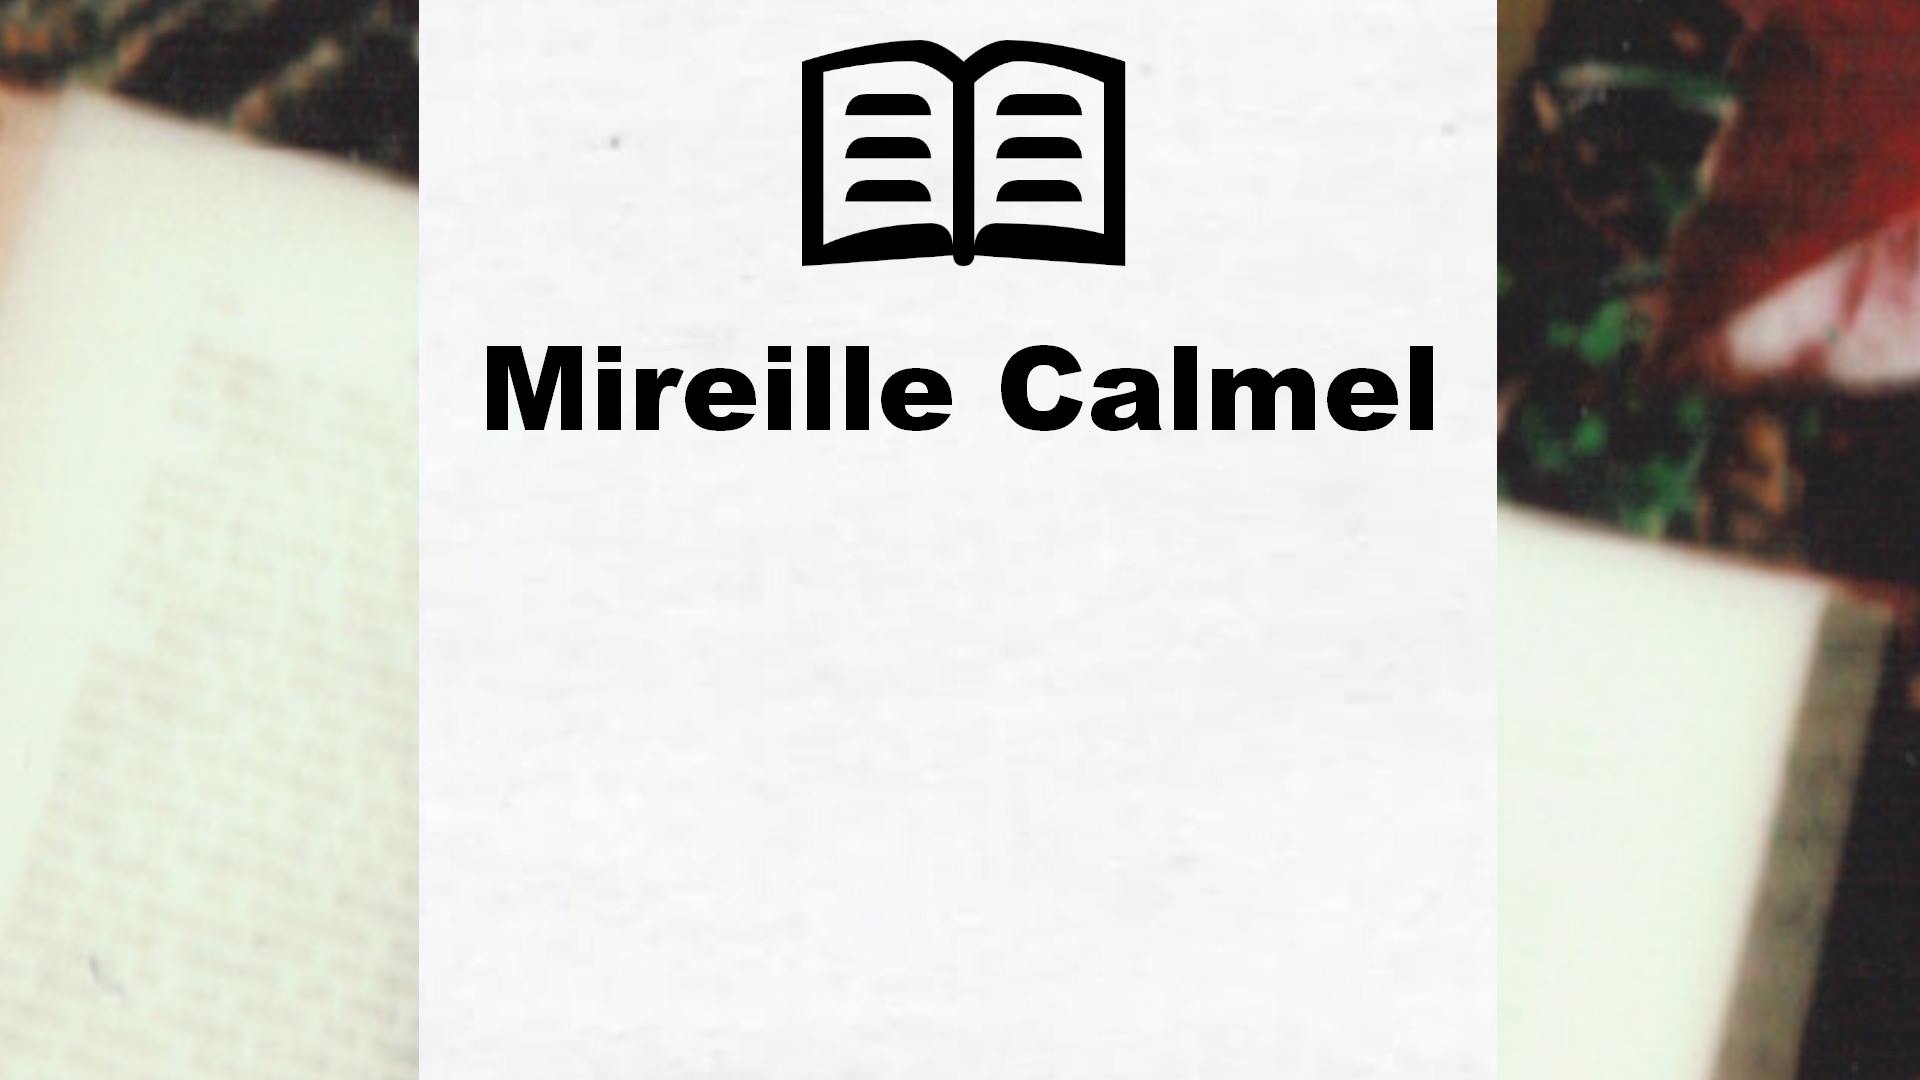 Livres de Mireille Calmel